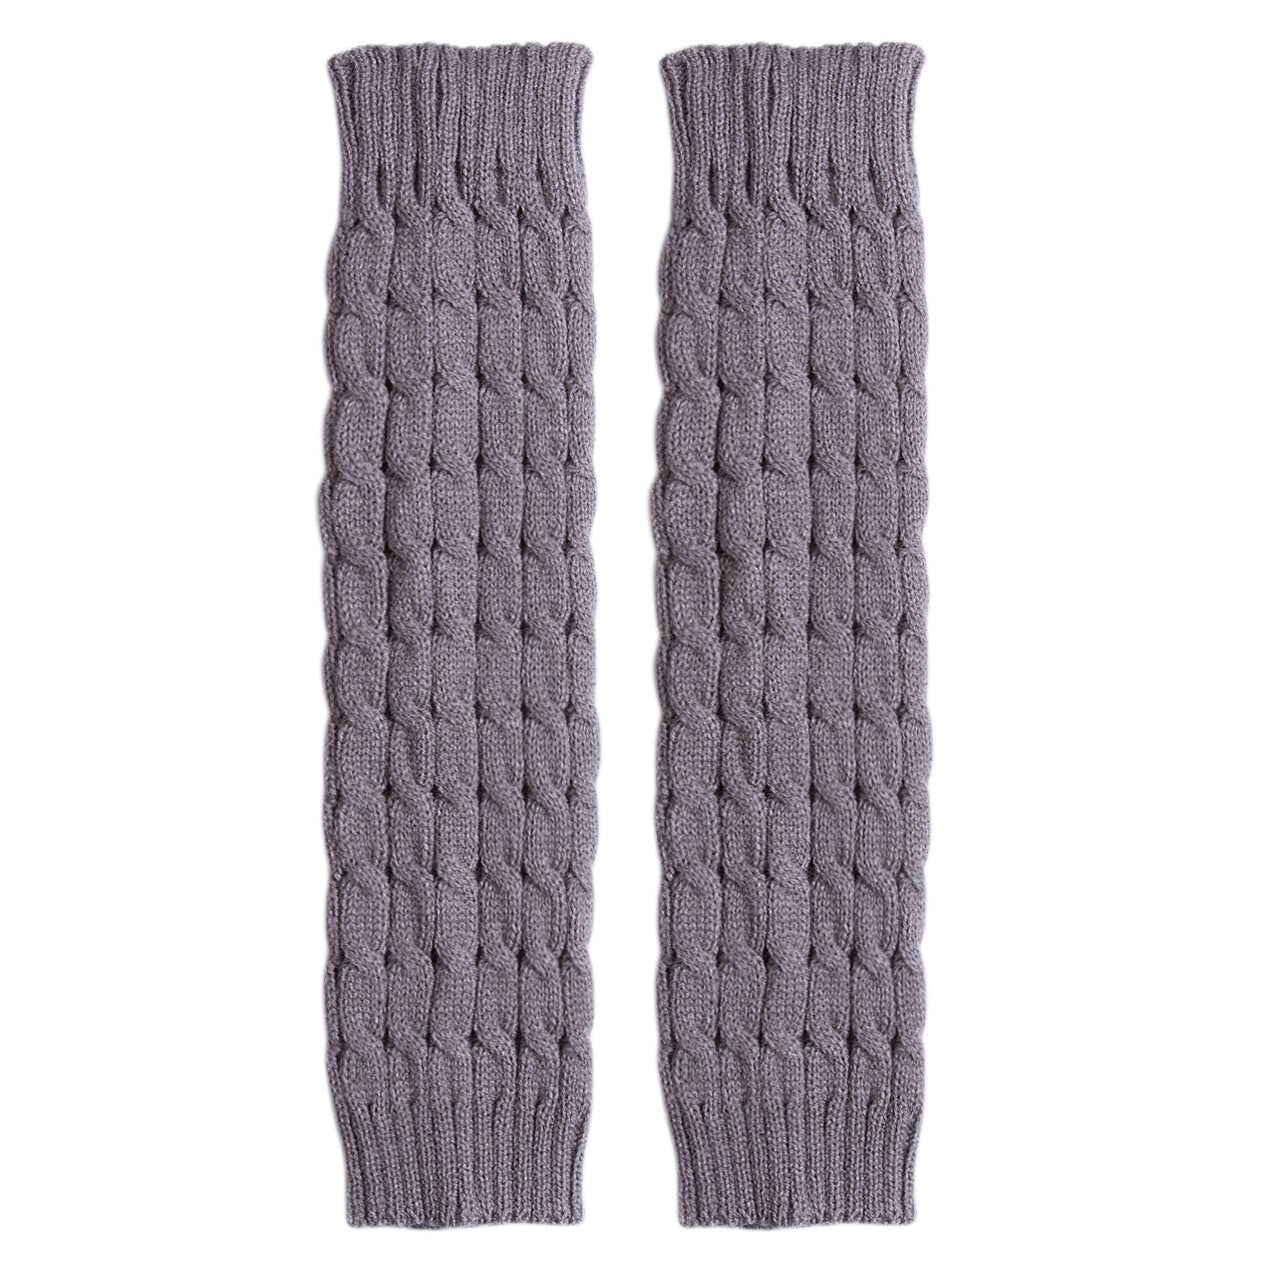 Chaussettes en laine pour les pieds